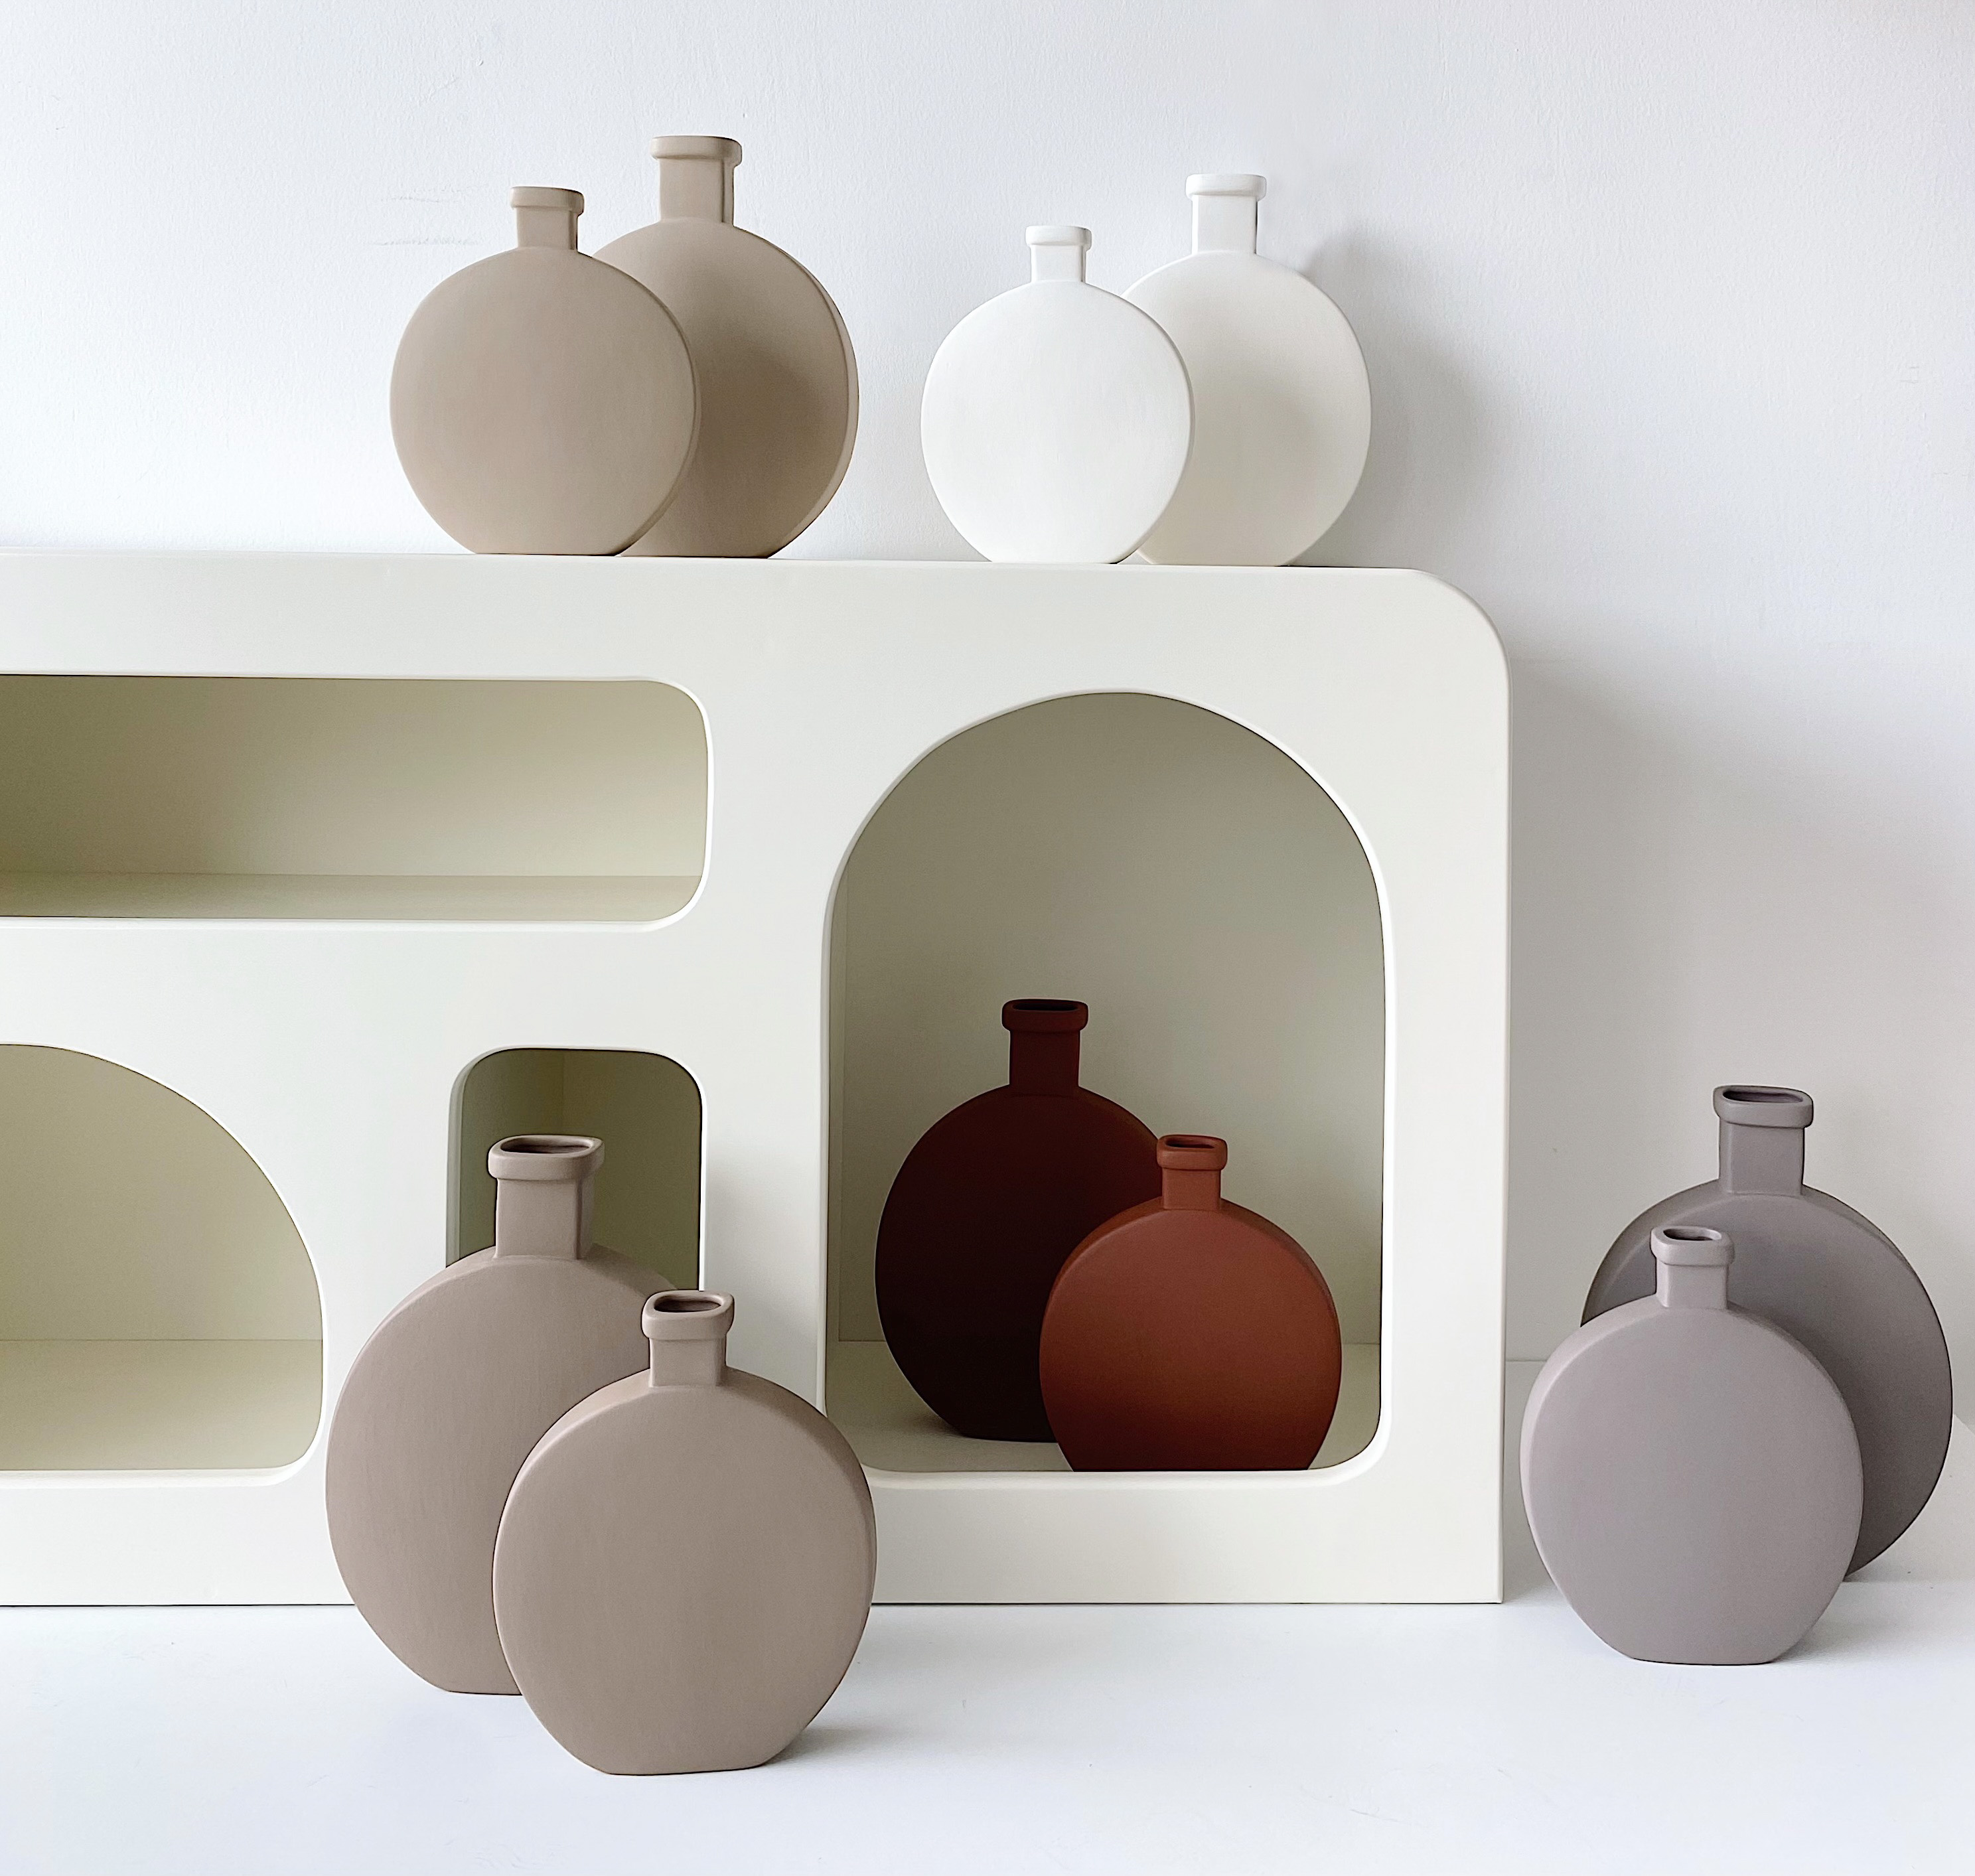 Matery 2 pcs Ceramic Vase Set White